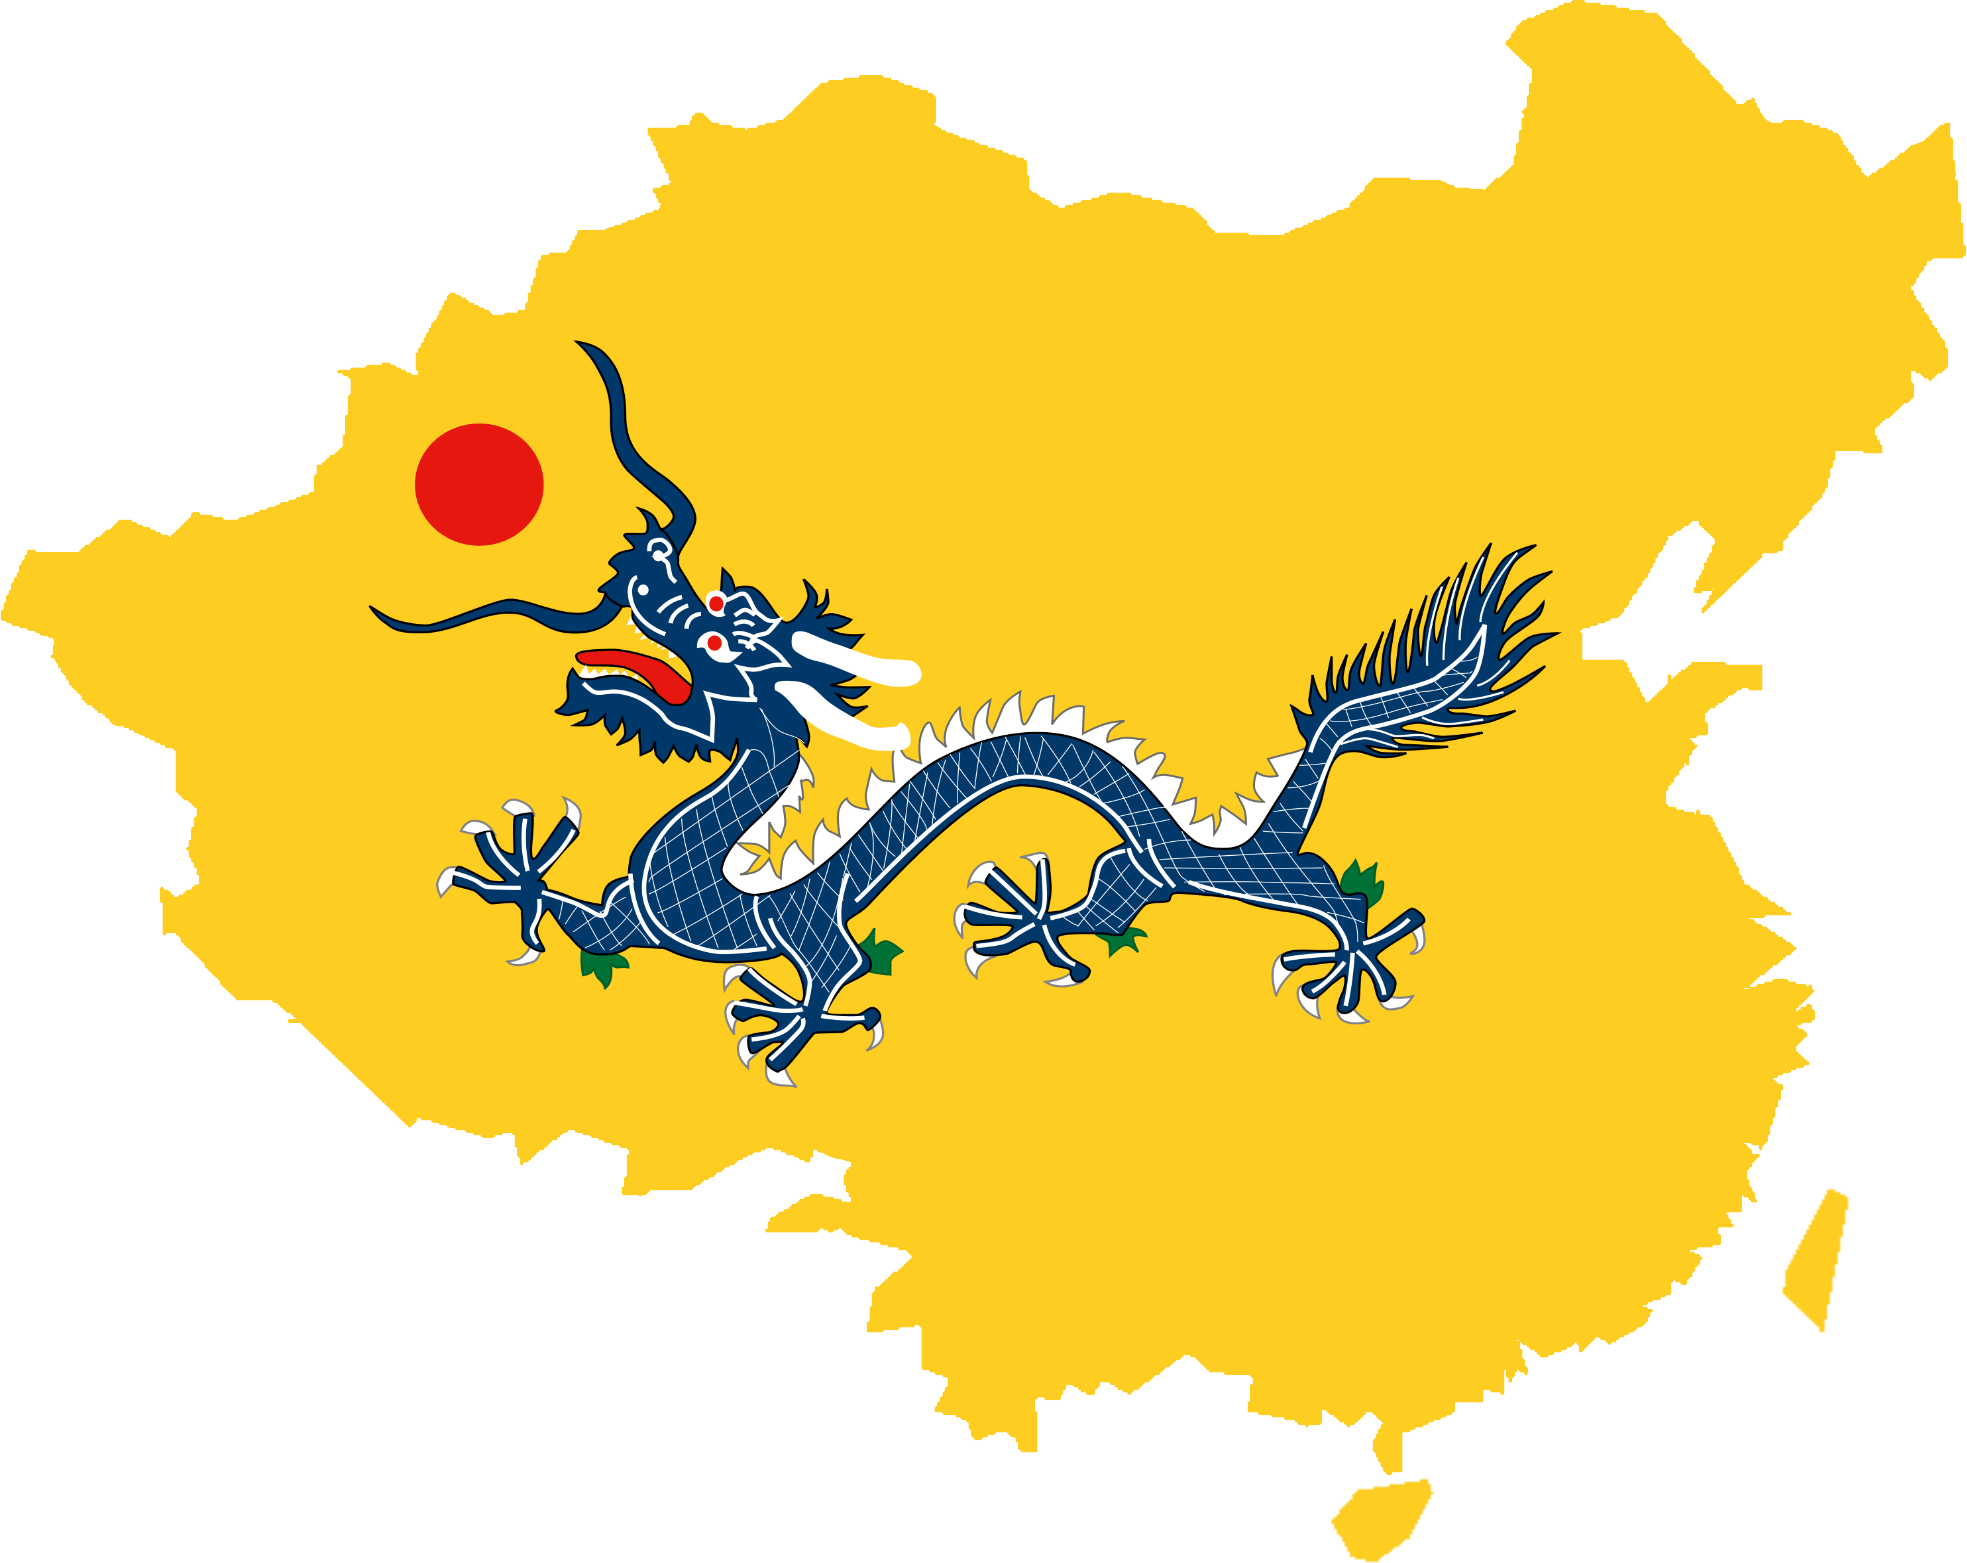 Dinastia Qing